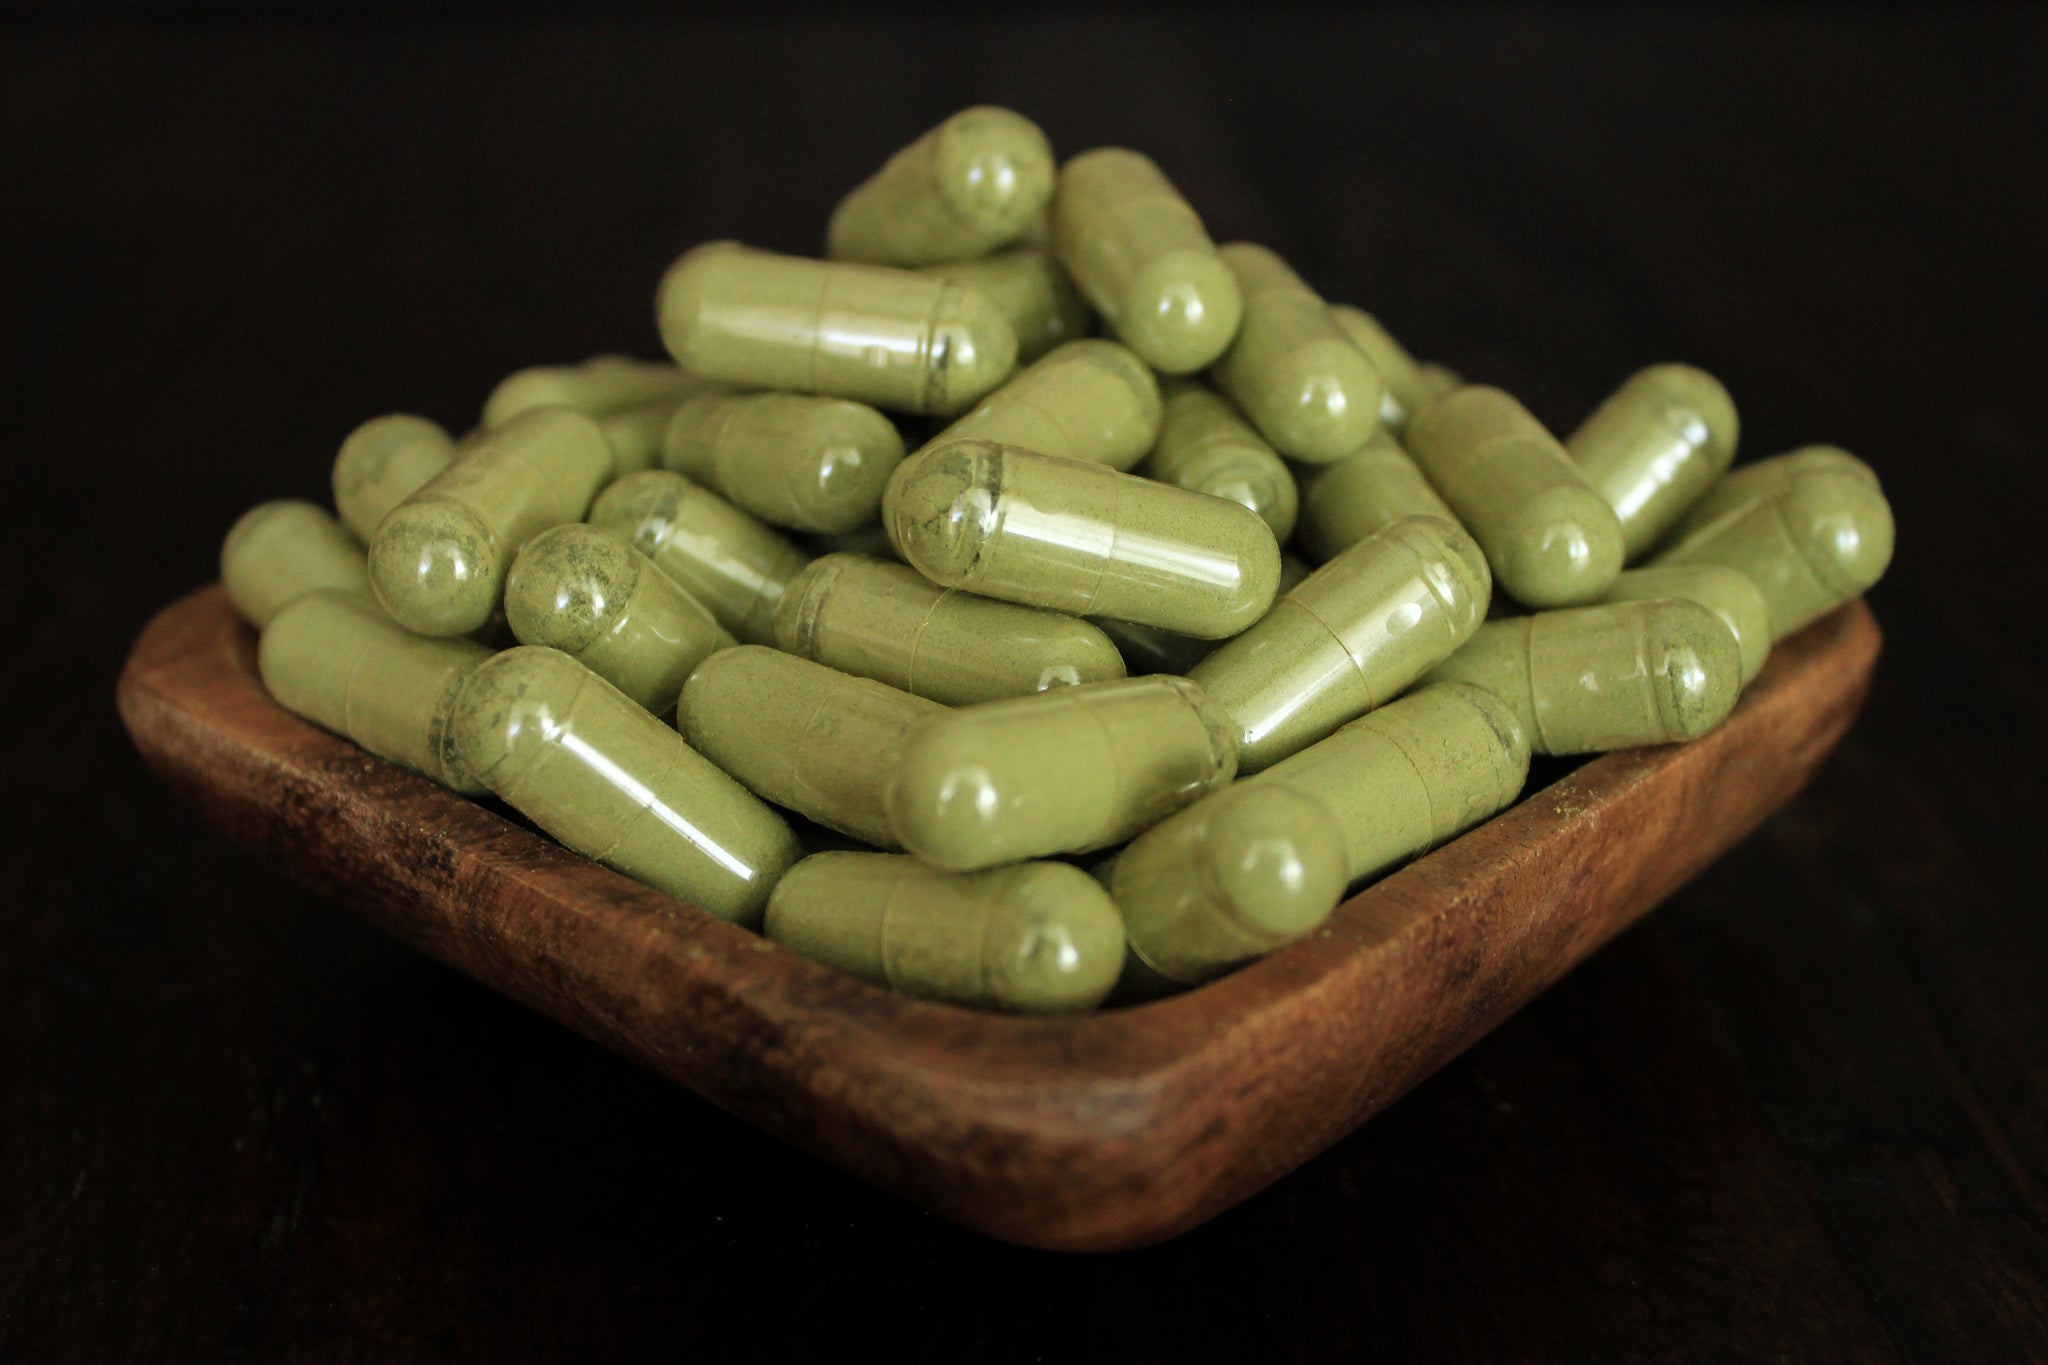 green kratom capsules